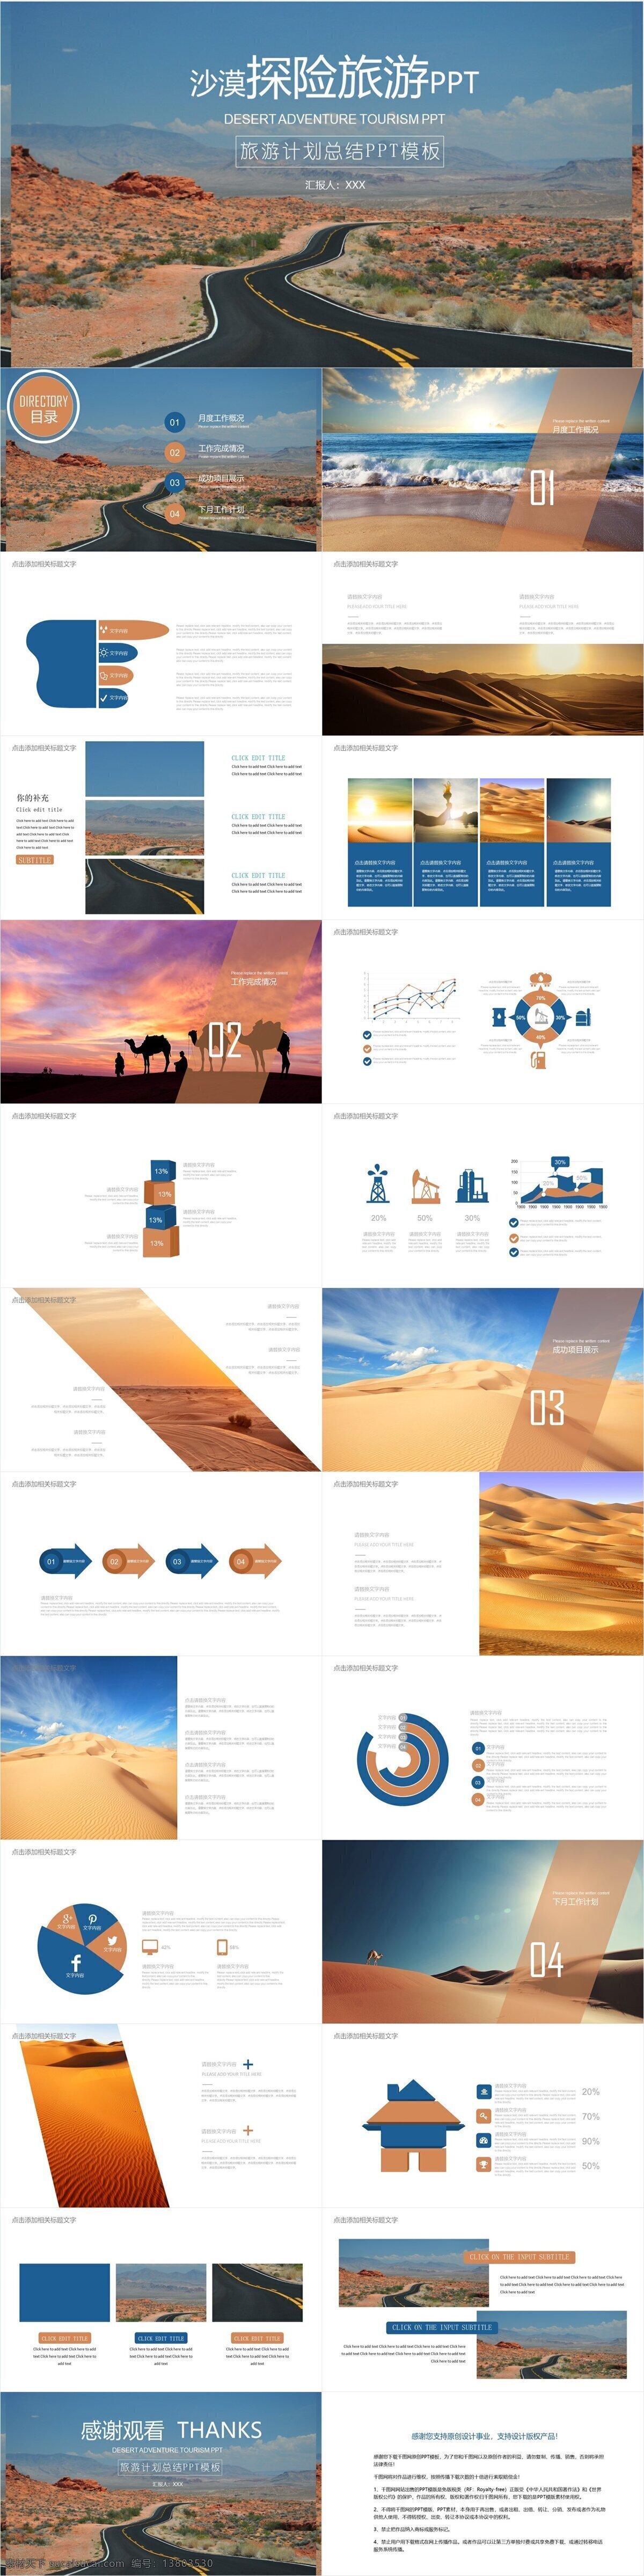 简约 风 沙漠 探险旅游 宣传 模板 创意 画册 ppt模板 企业宣传 产品介绍 企业简介 商务合作 策划 报告